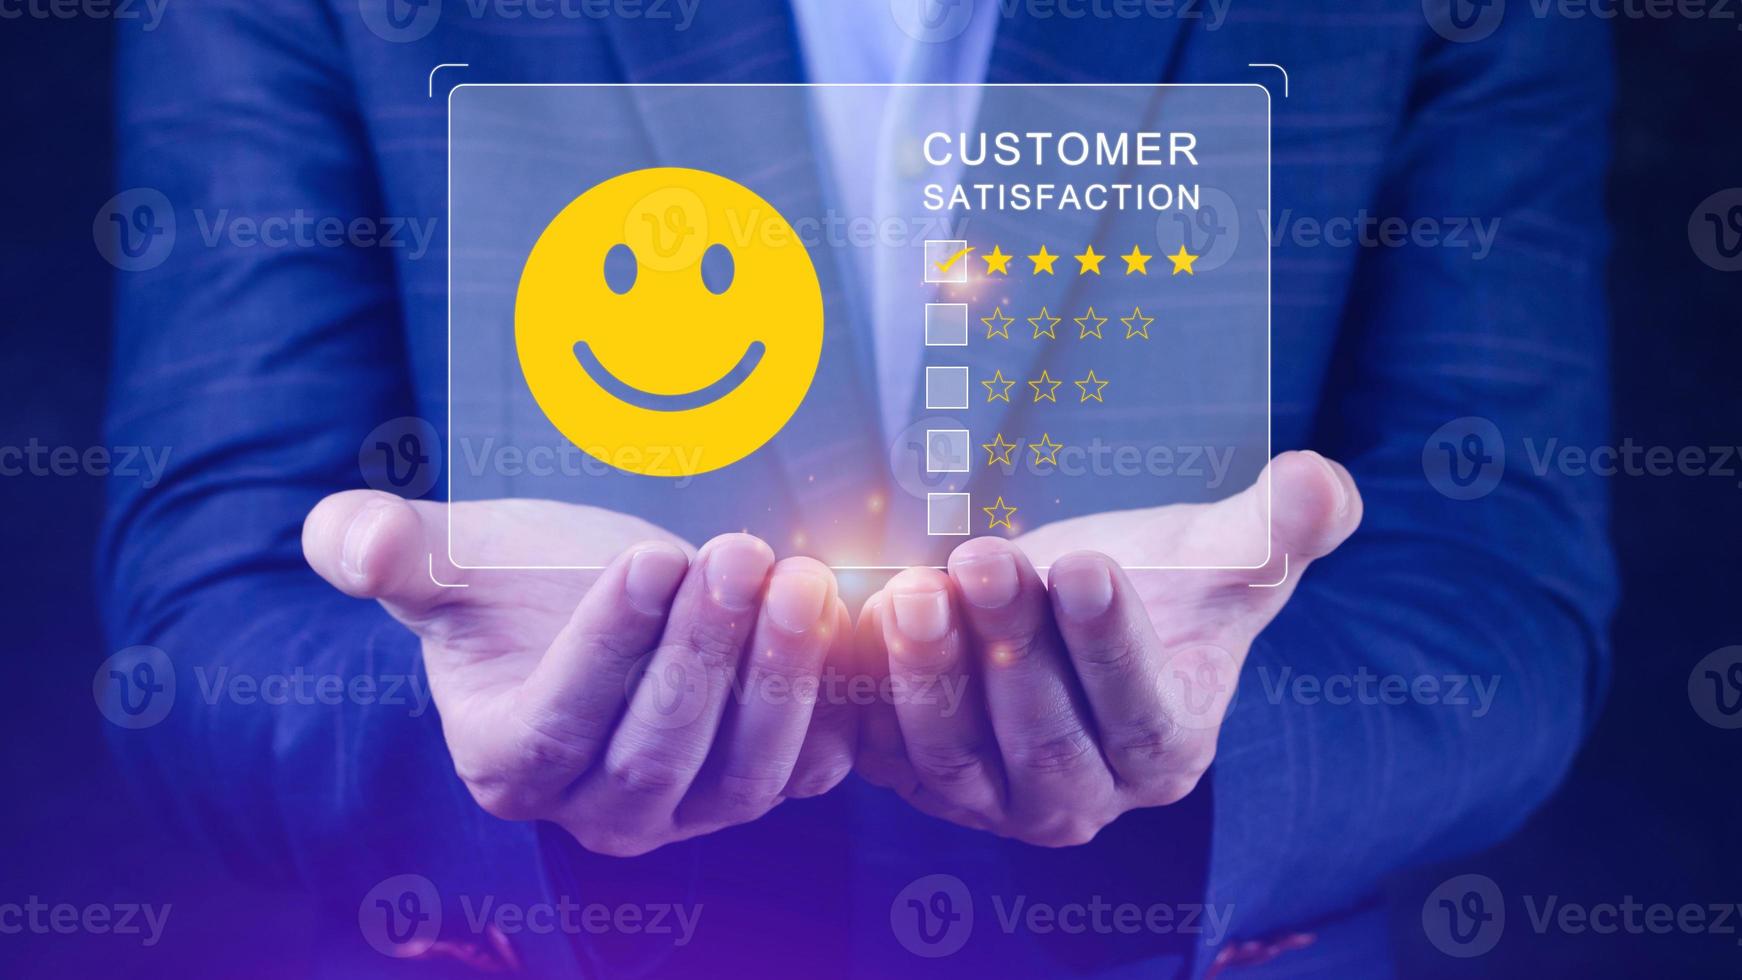 l'utente assegna una valutazione all'esperienza del servizio sull'applicazione online, il concetto di sondaggio di feedback sulla soddisfazione delle recensioni dei clienti, il cliente può valutare la qualità del servizio che porta alla classifica della reputazione dell'azienda. foto